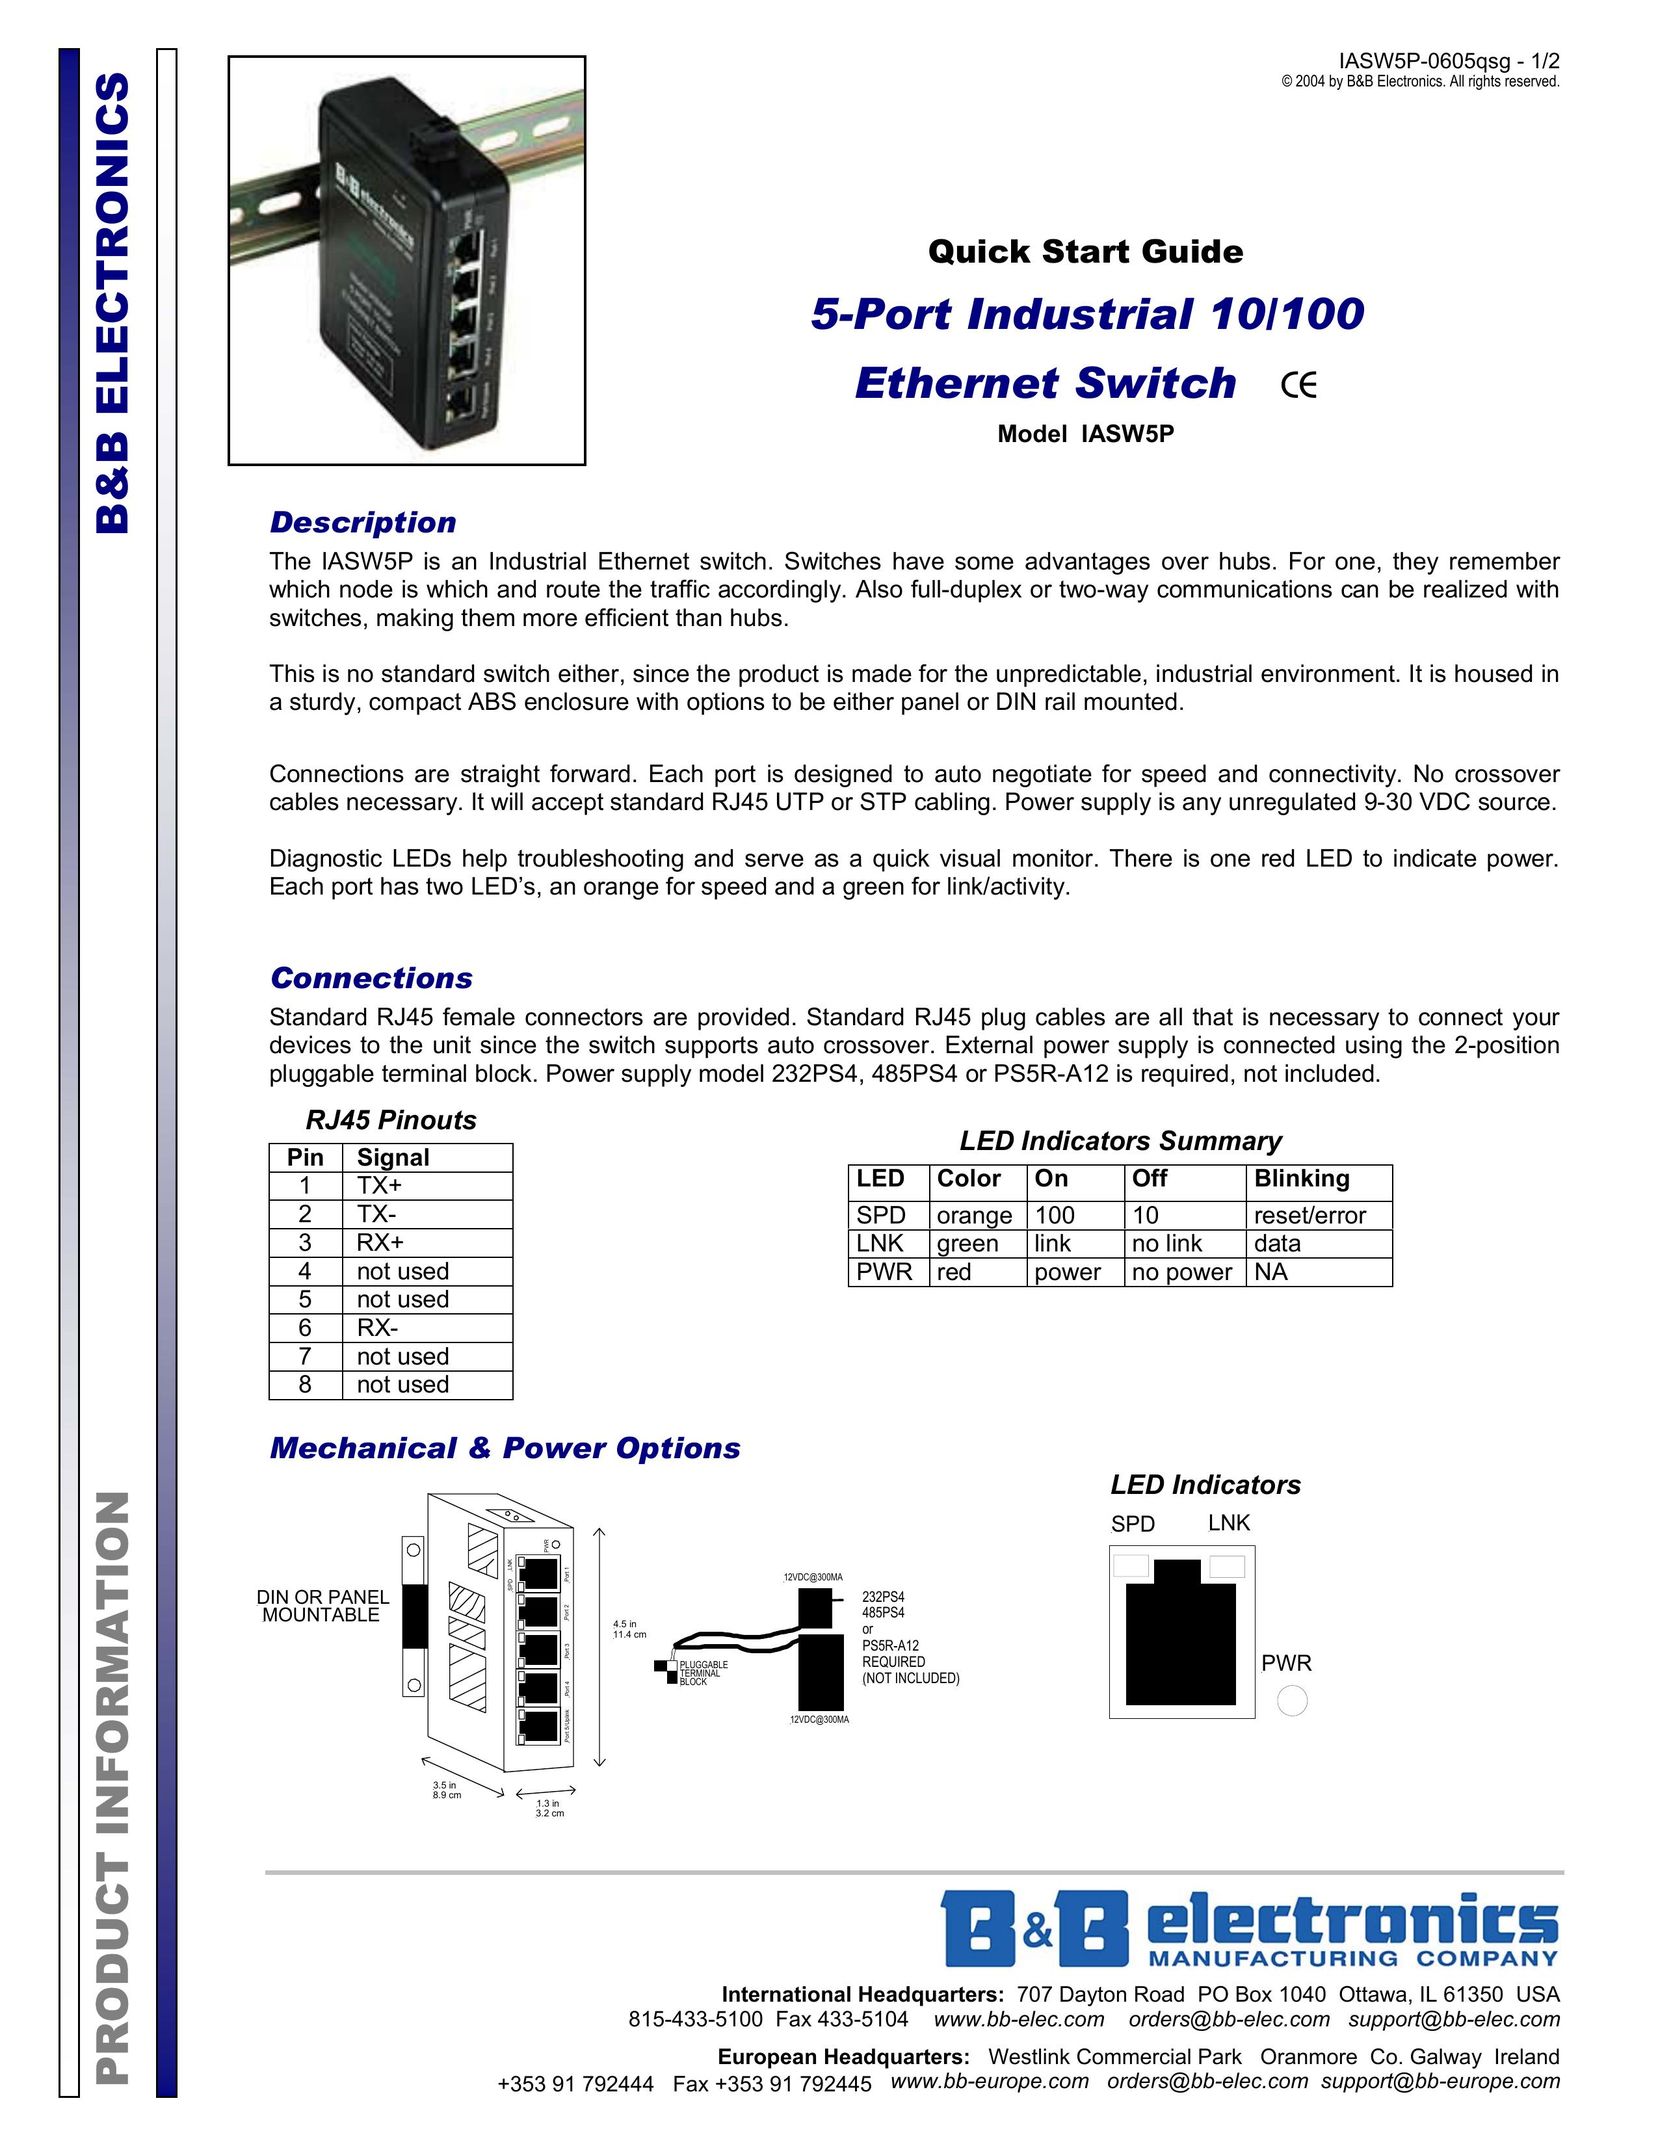 B&B Electronics IASW5P Switch User Manual